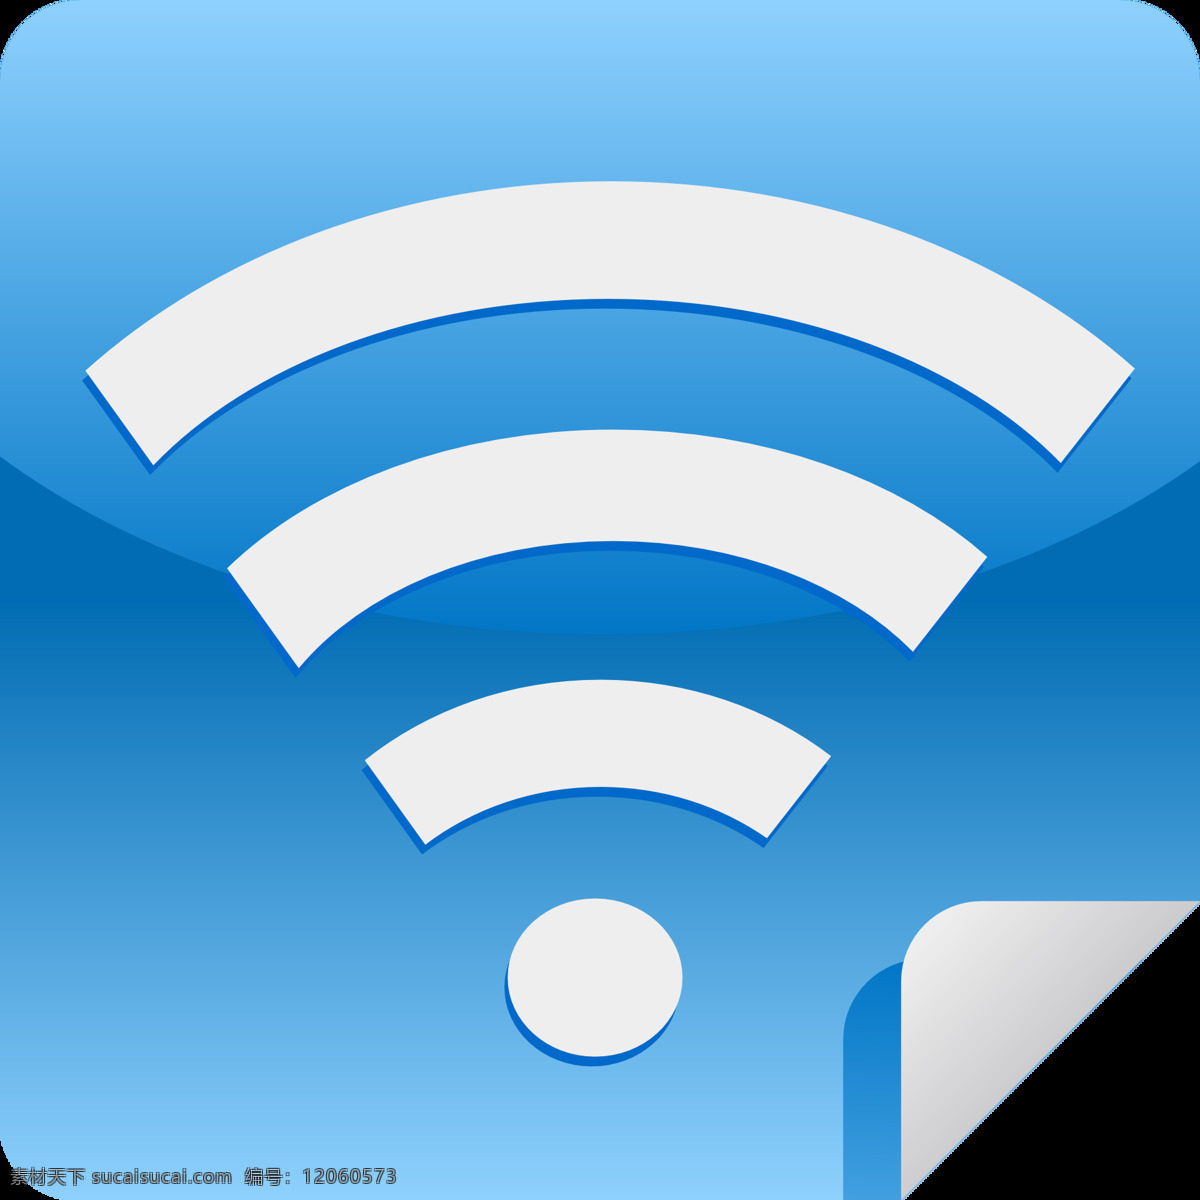 wifi 无线局域网 wifi图标 wifi设计 无线保真 图标设计 歪坏 wifi标识 无线宽带 无线网 无线上网 标志图标 公共标识标志